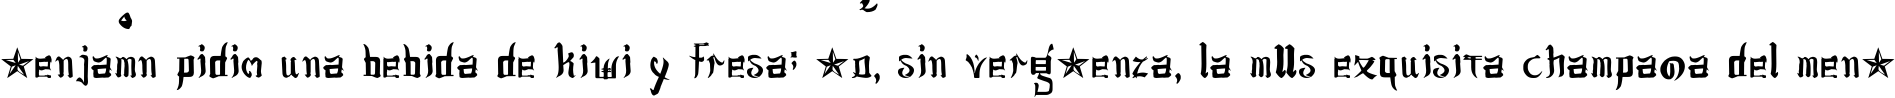 Пример написания шрифтом jsa lovechinese текста на испанском